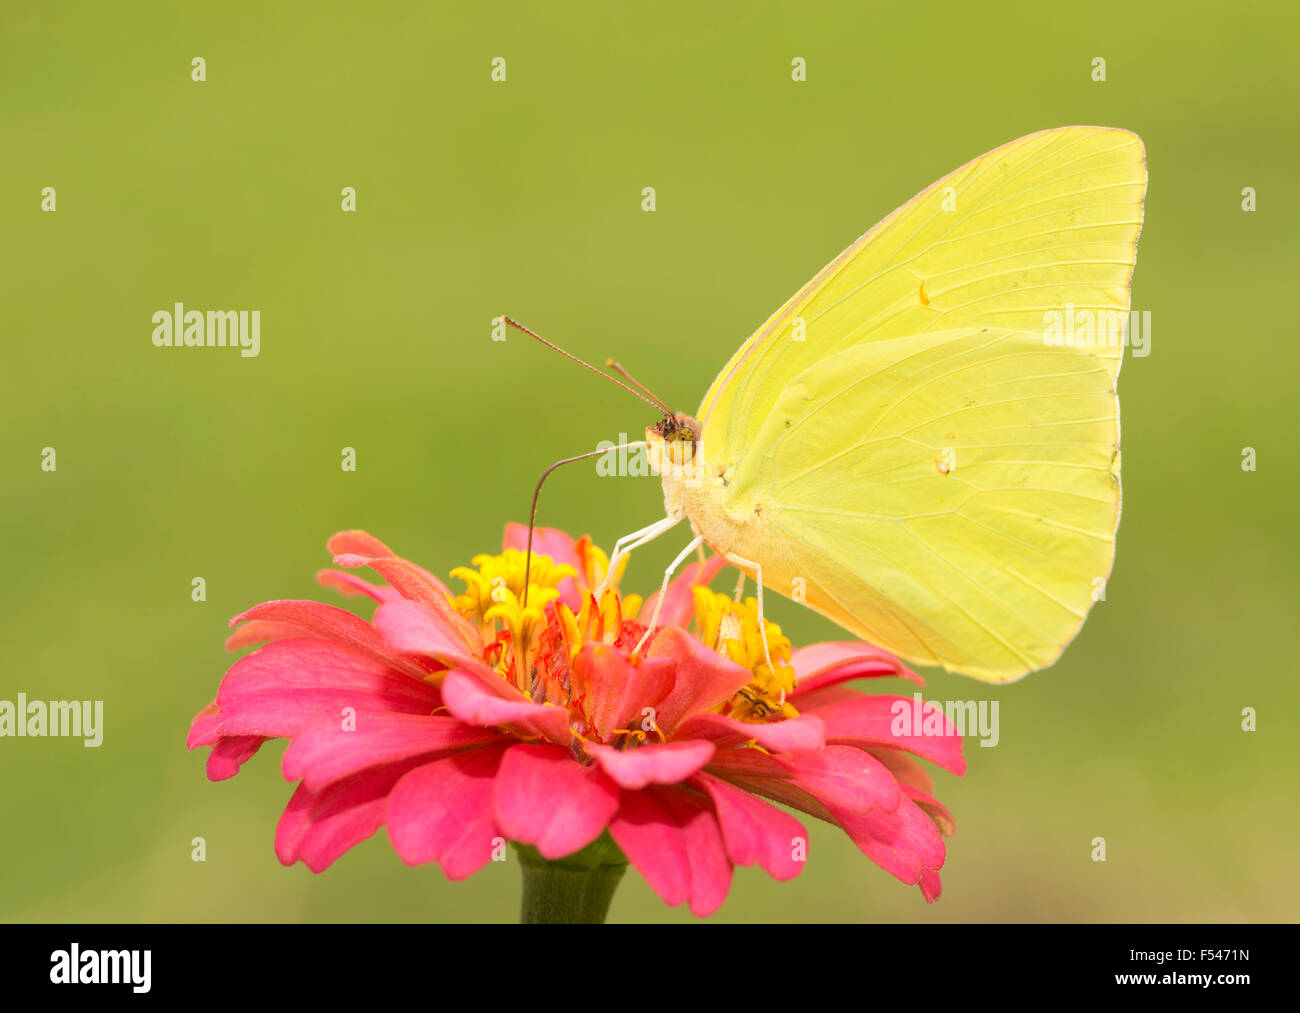 Hermosa, brillante y amarillo azufre sin nubes de mariposas macho alimentándose de una flor Zinnia rojas contra el fondo verde soleado Foto de stock